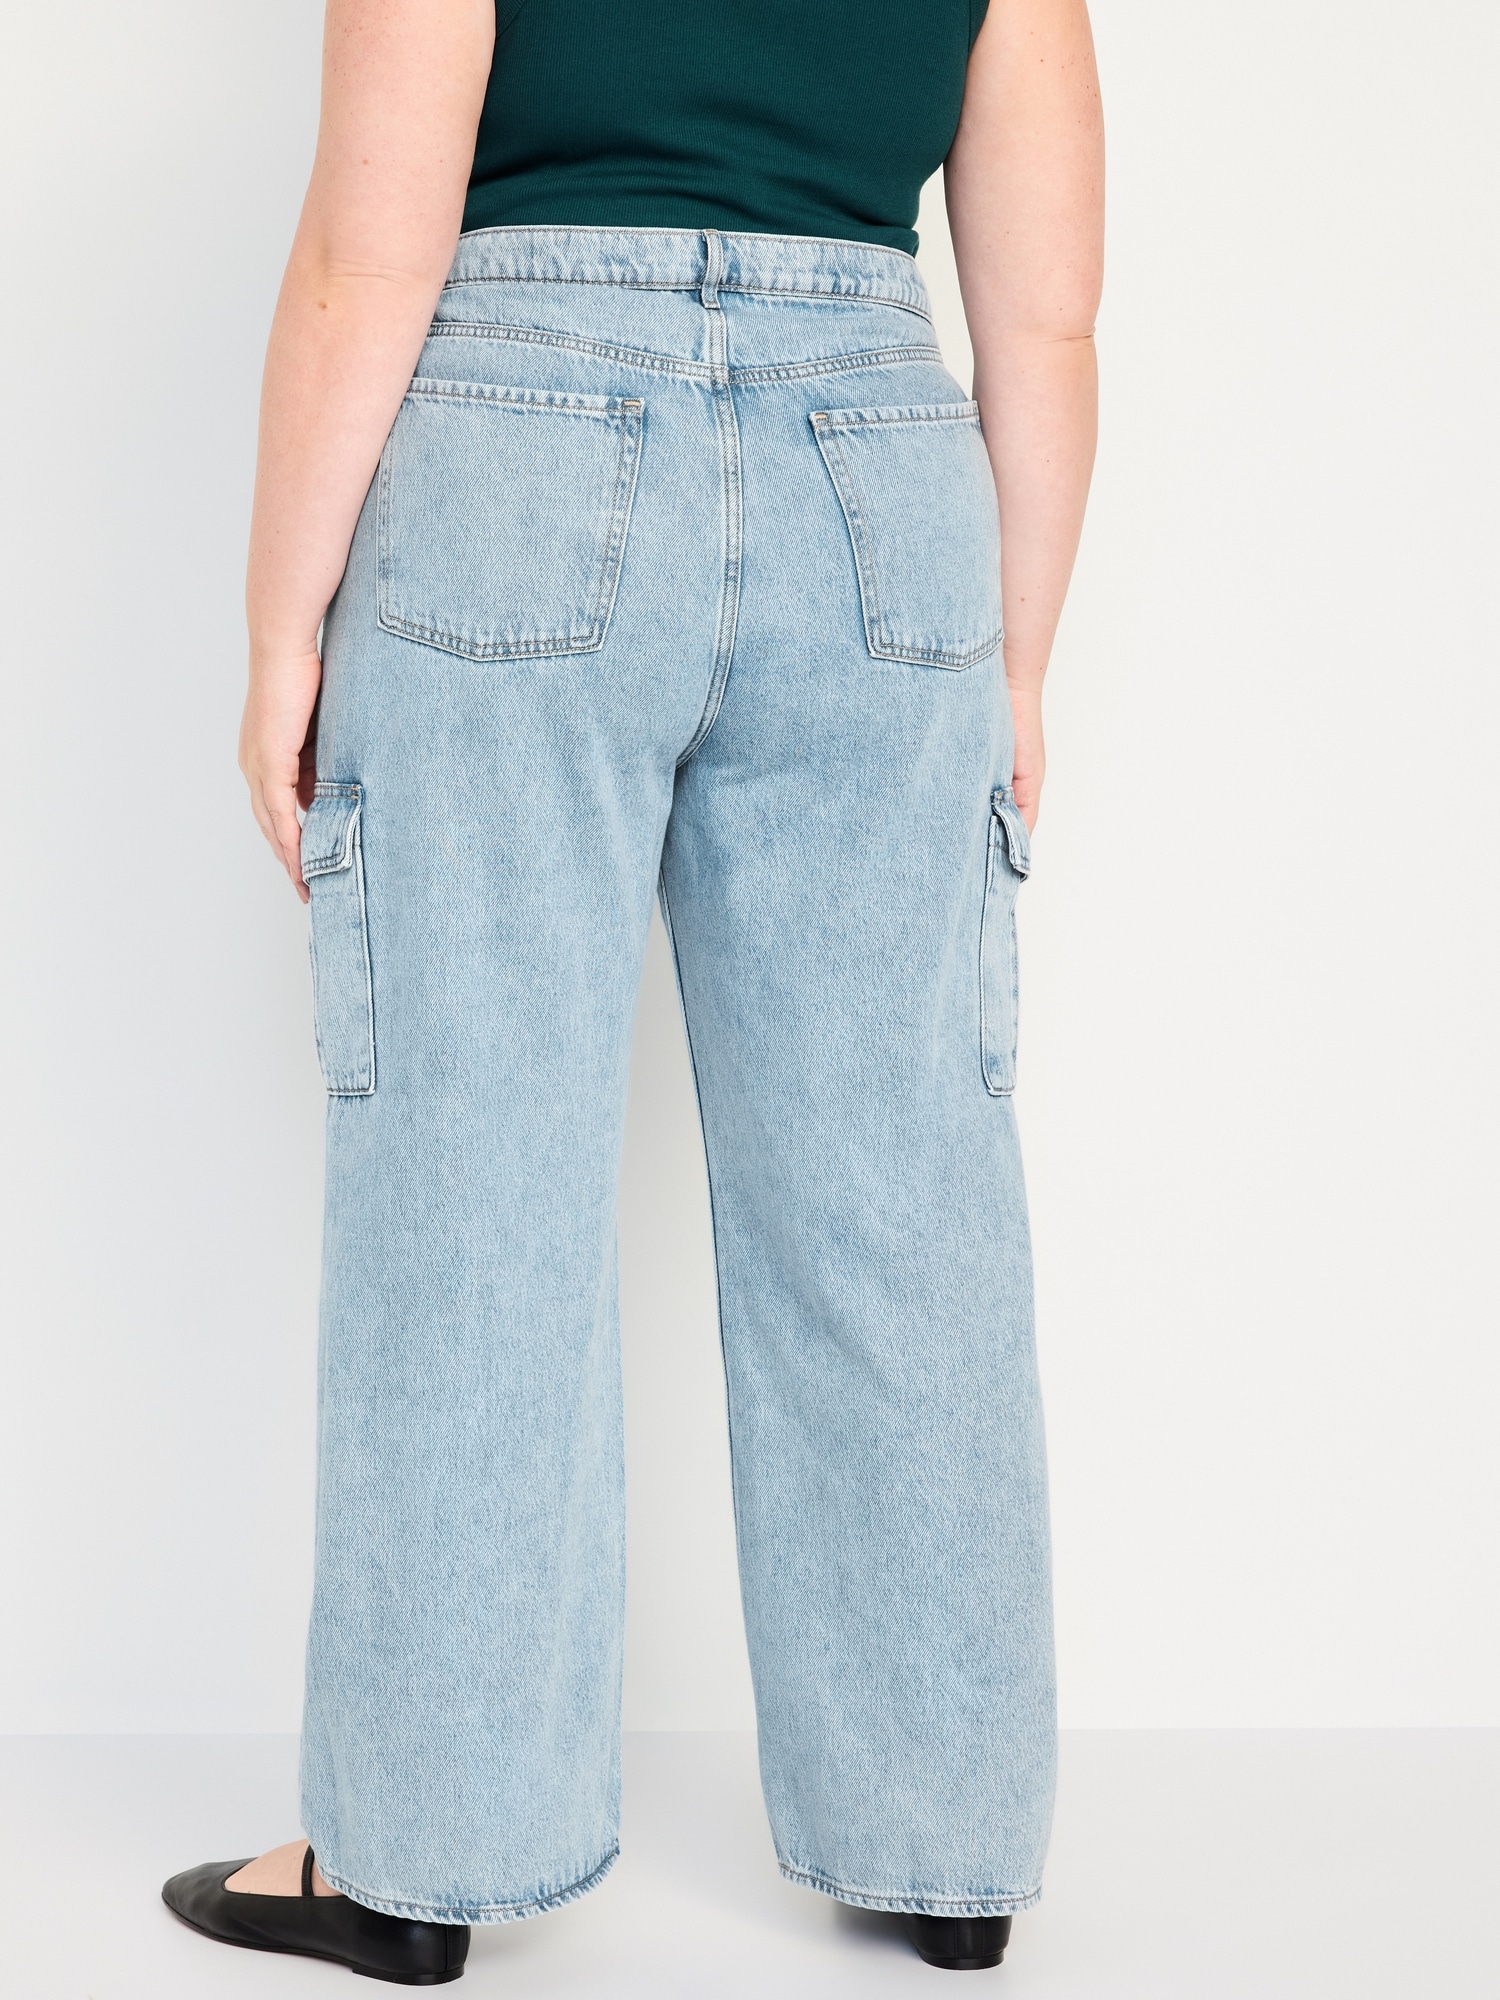 Wide leg cargo jeans - Women